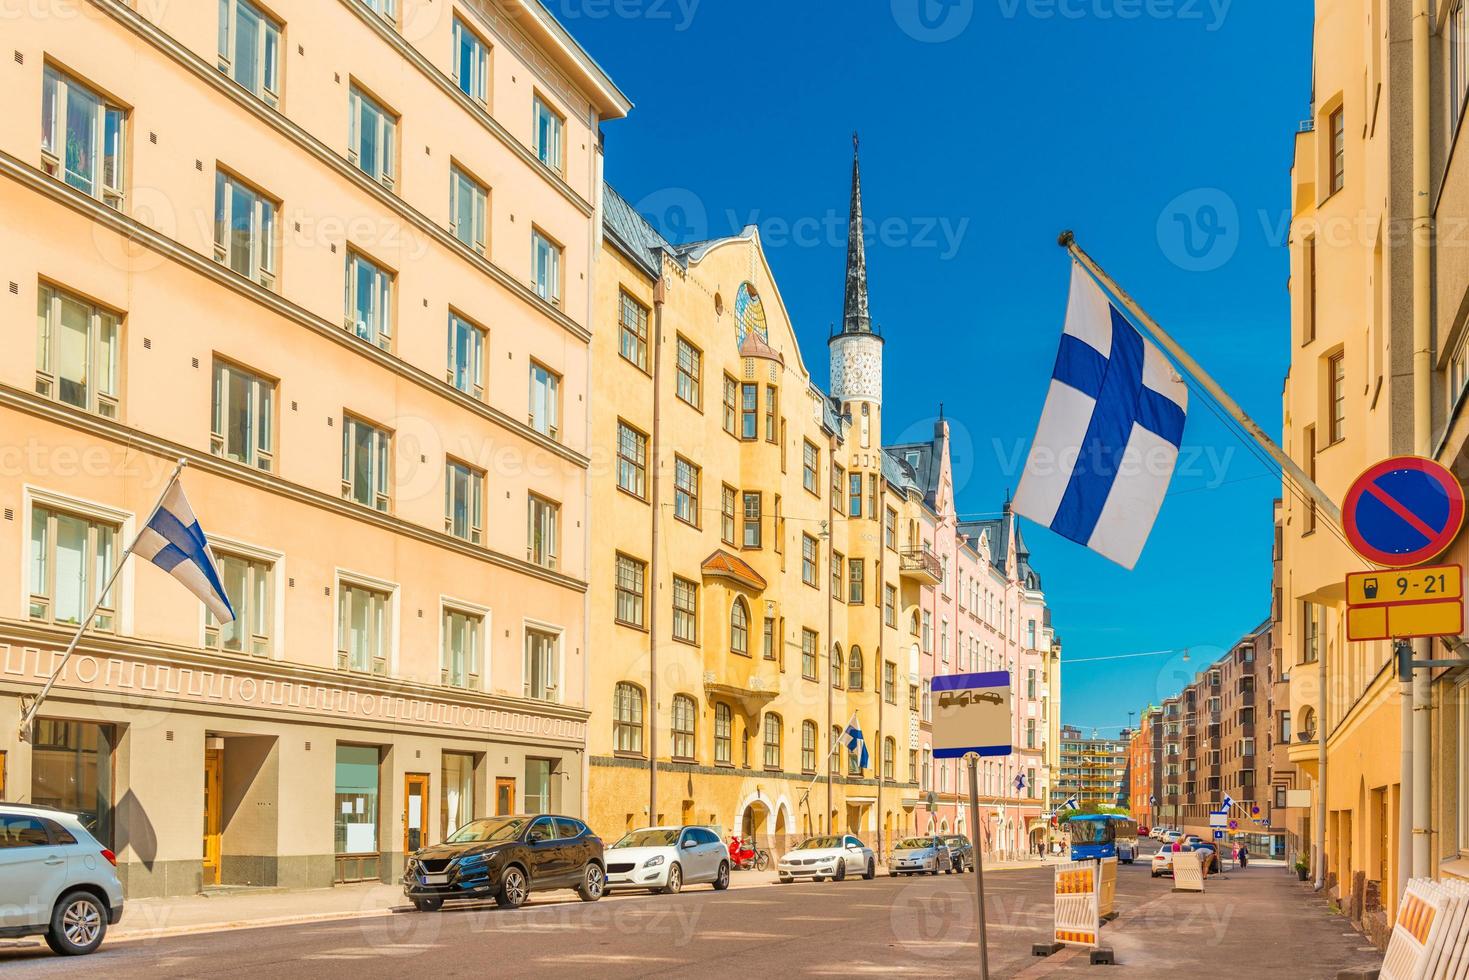 une belle rue à helsinki avec des bâtiments historiques colorés avec des drapeaux finlandais sur les façades, finlande photo